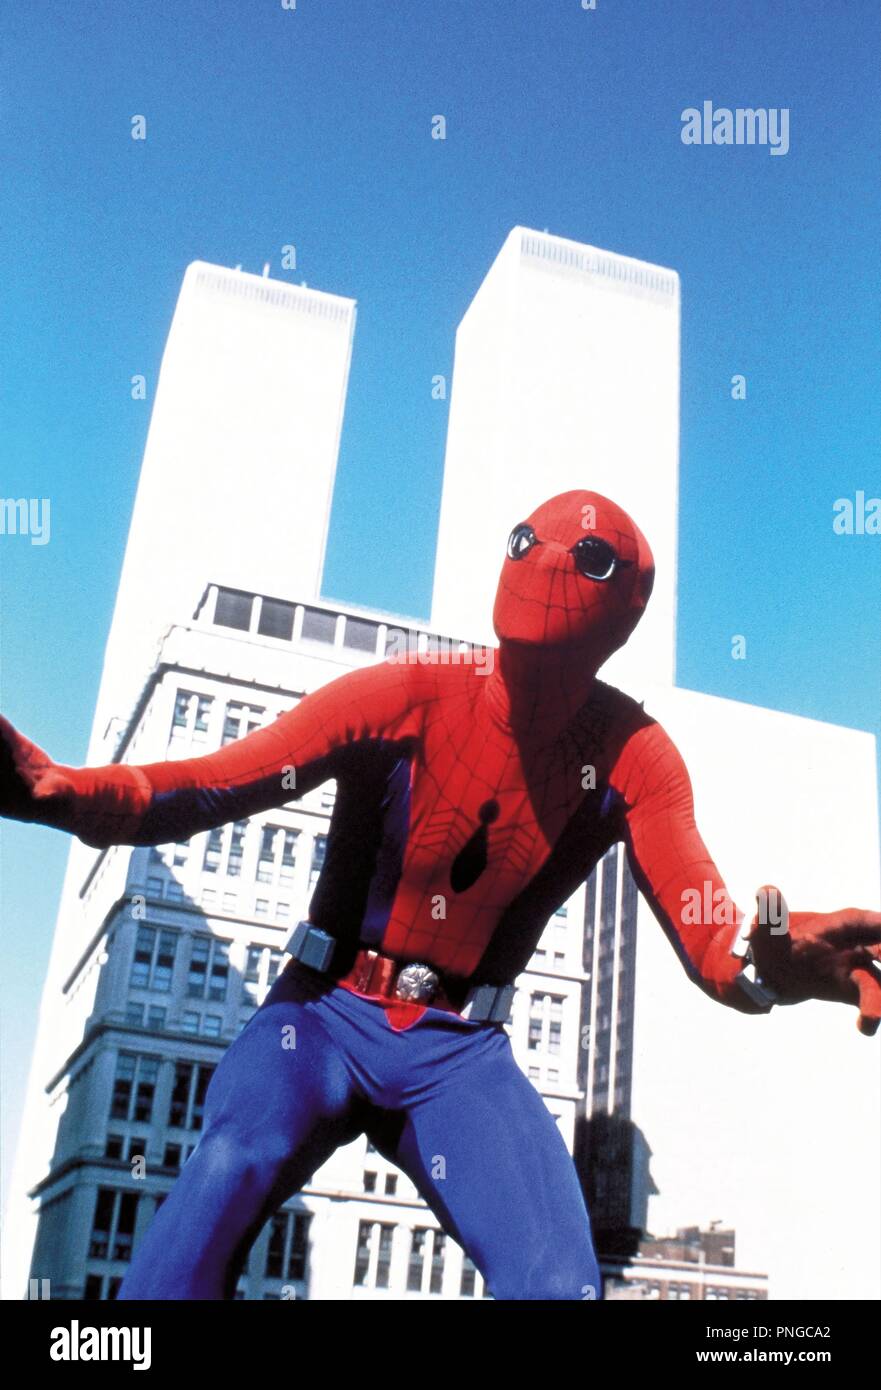 Original Film Titel: Spiderman. Englischer Titel: Spiderman. Jahr: 1977. Regie: E. W. SWACKHMAMER. Stars: Nicholas Hammond. Quelle: Columbia Pictures/Album Stockfoto